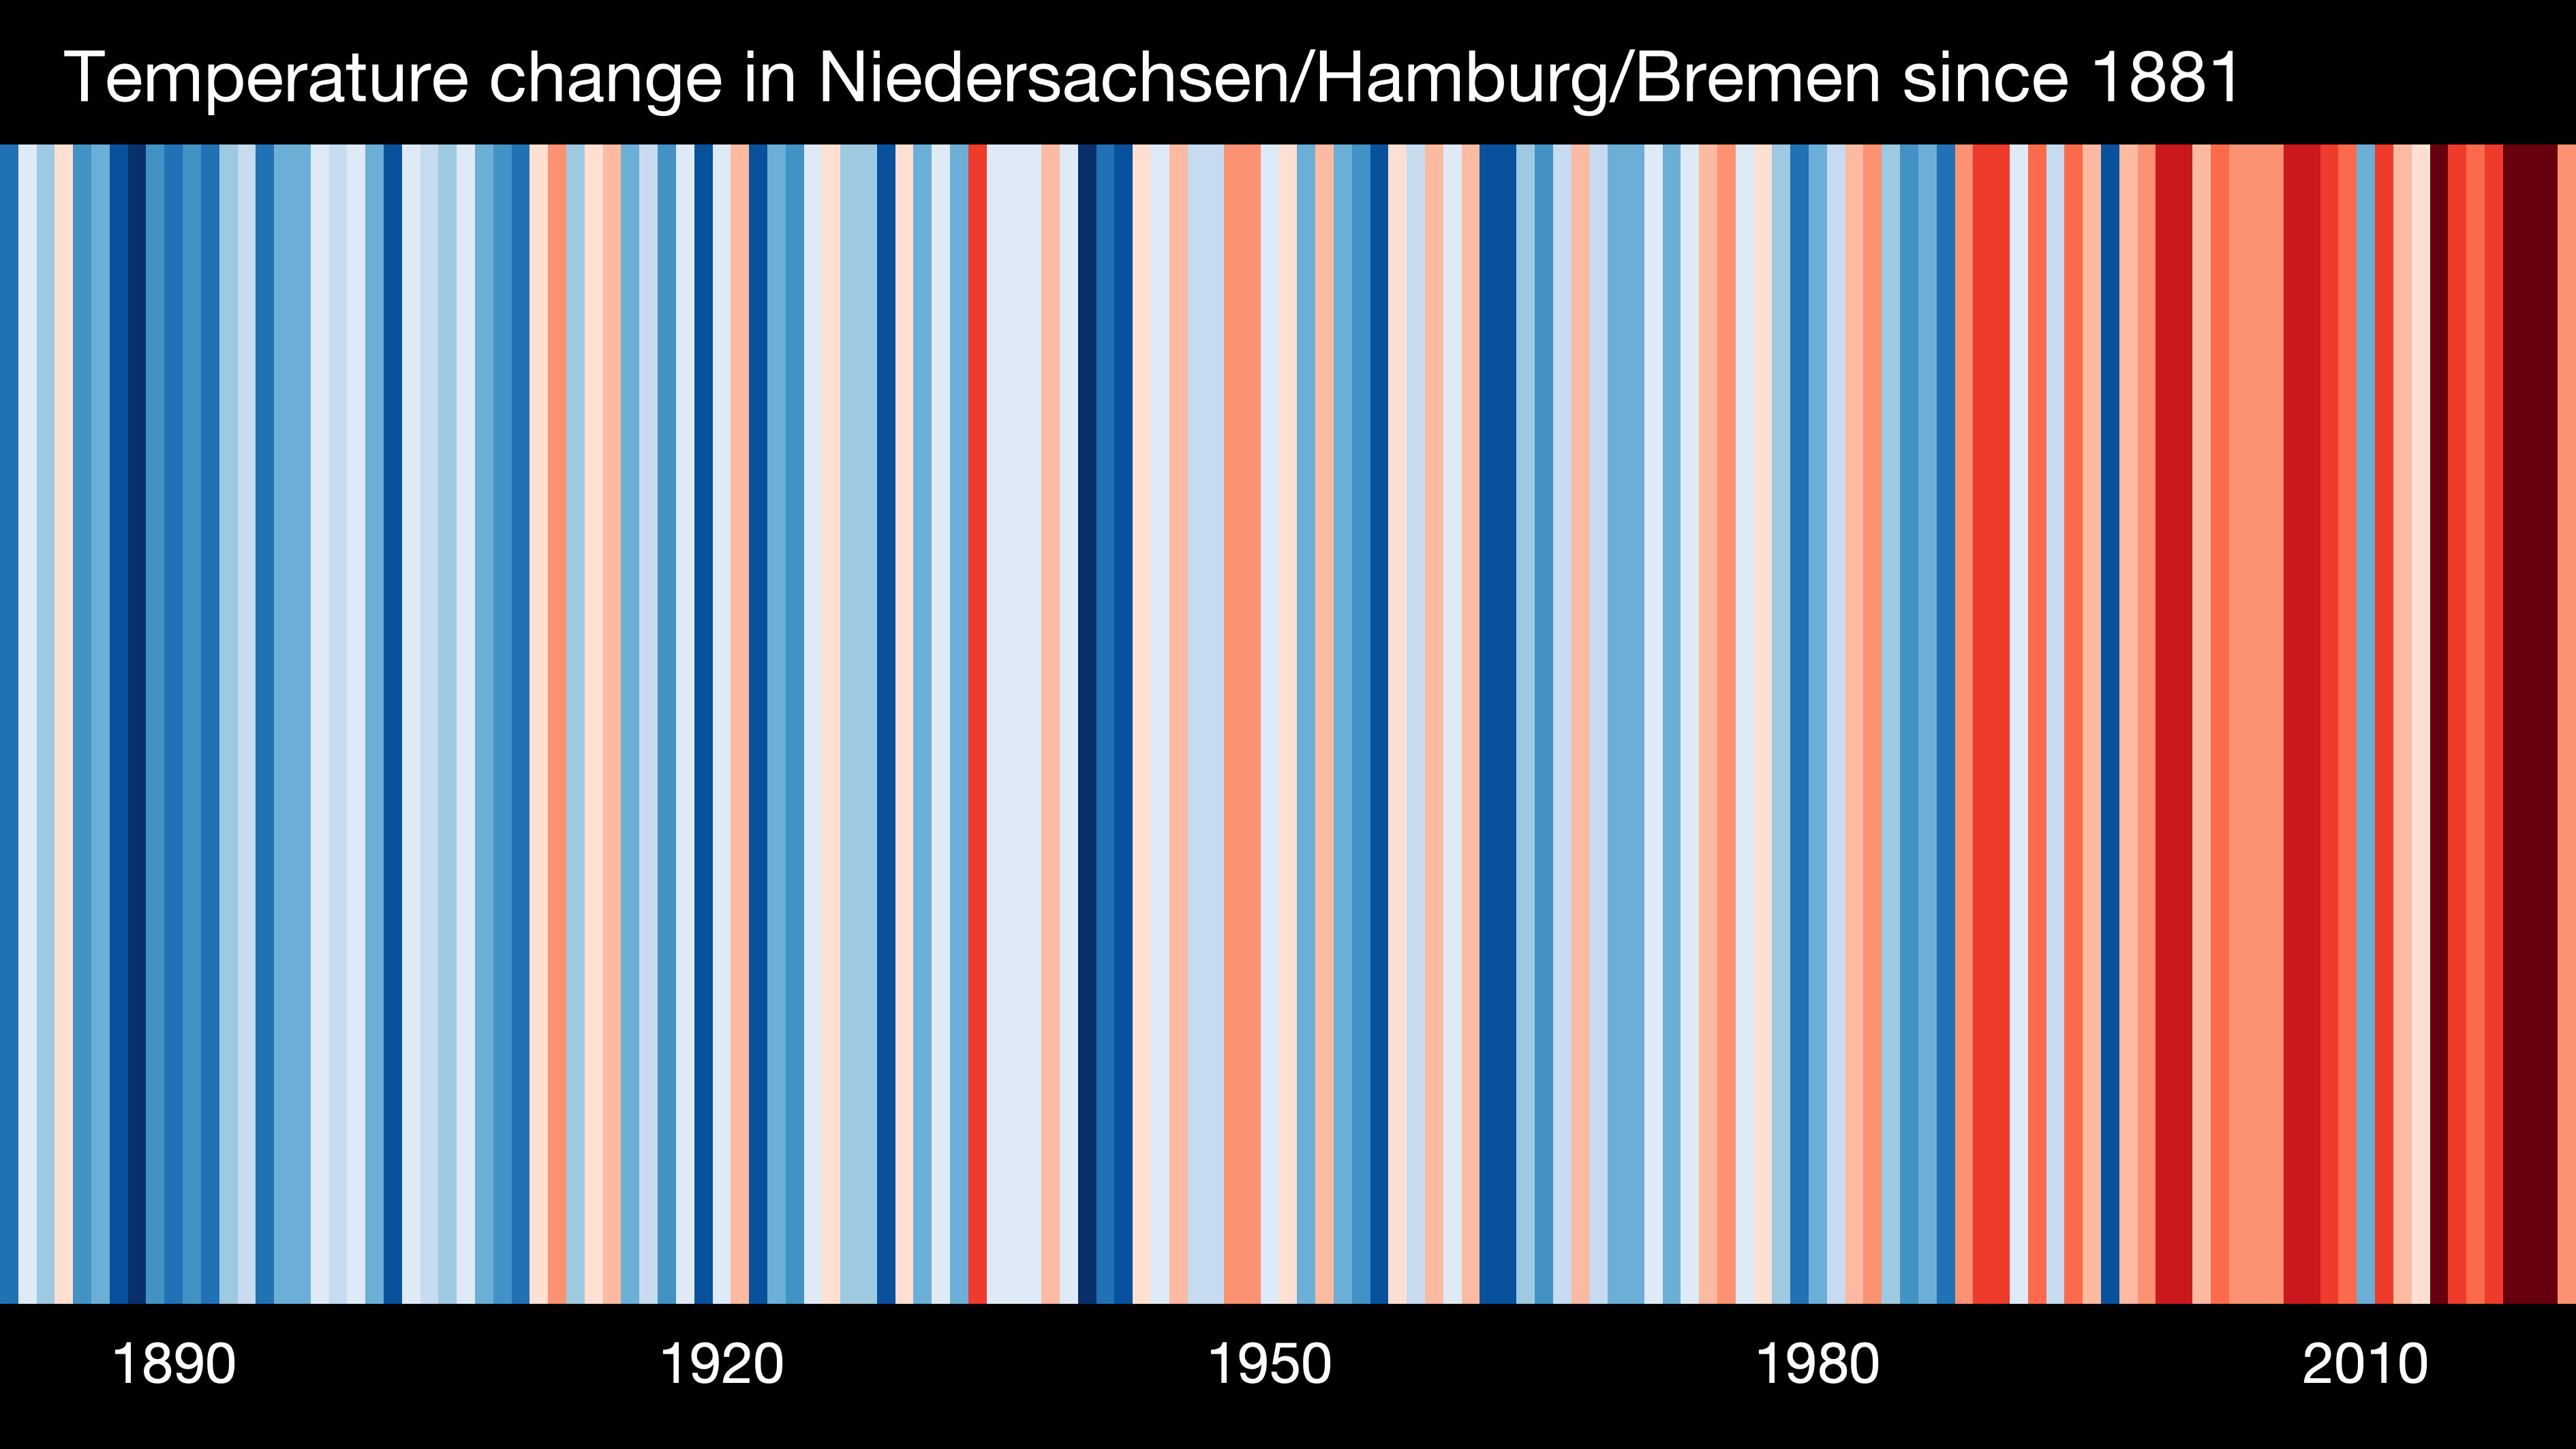 Grafik der Temparaturveränderung in Niedersachsen, Hamburg und Bremen seit 1881. 